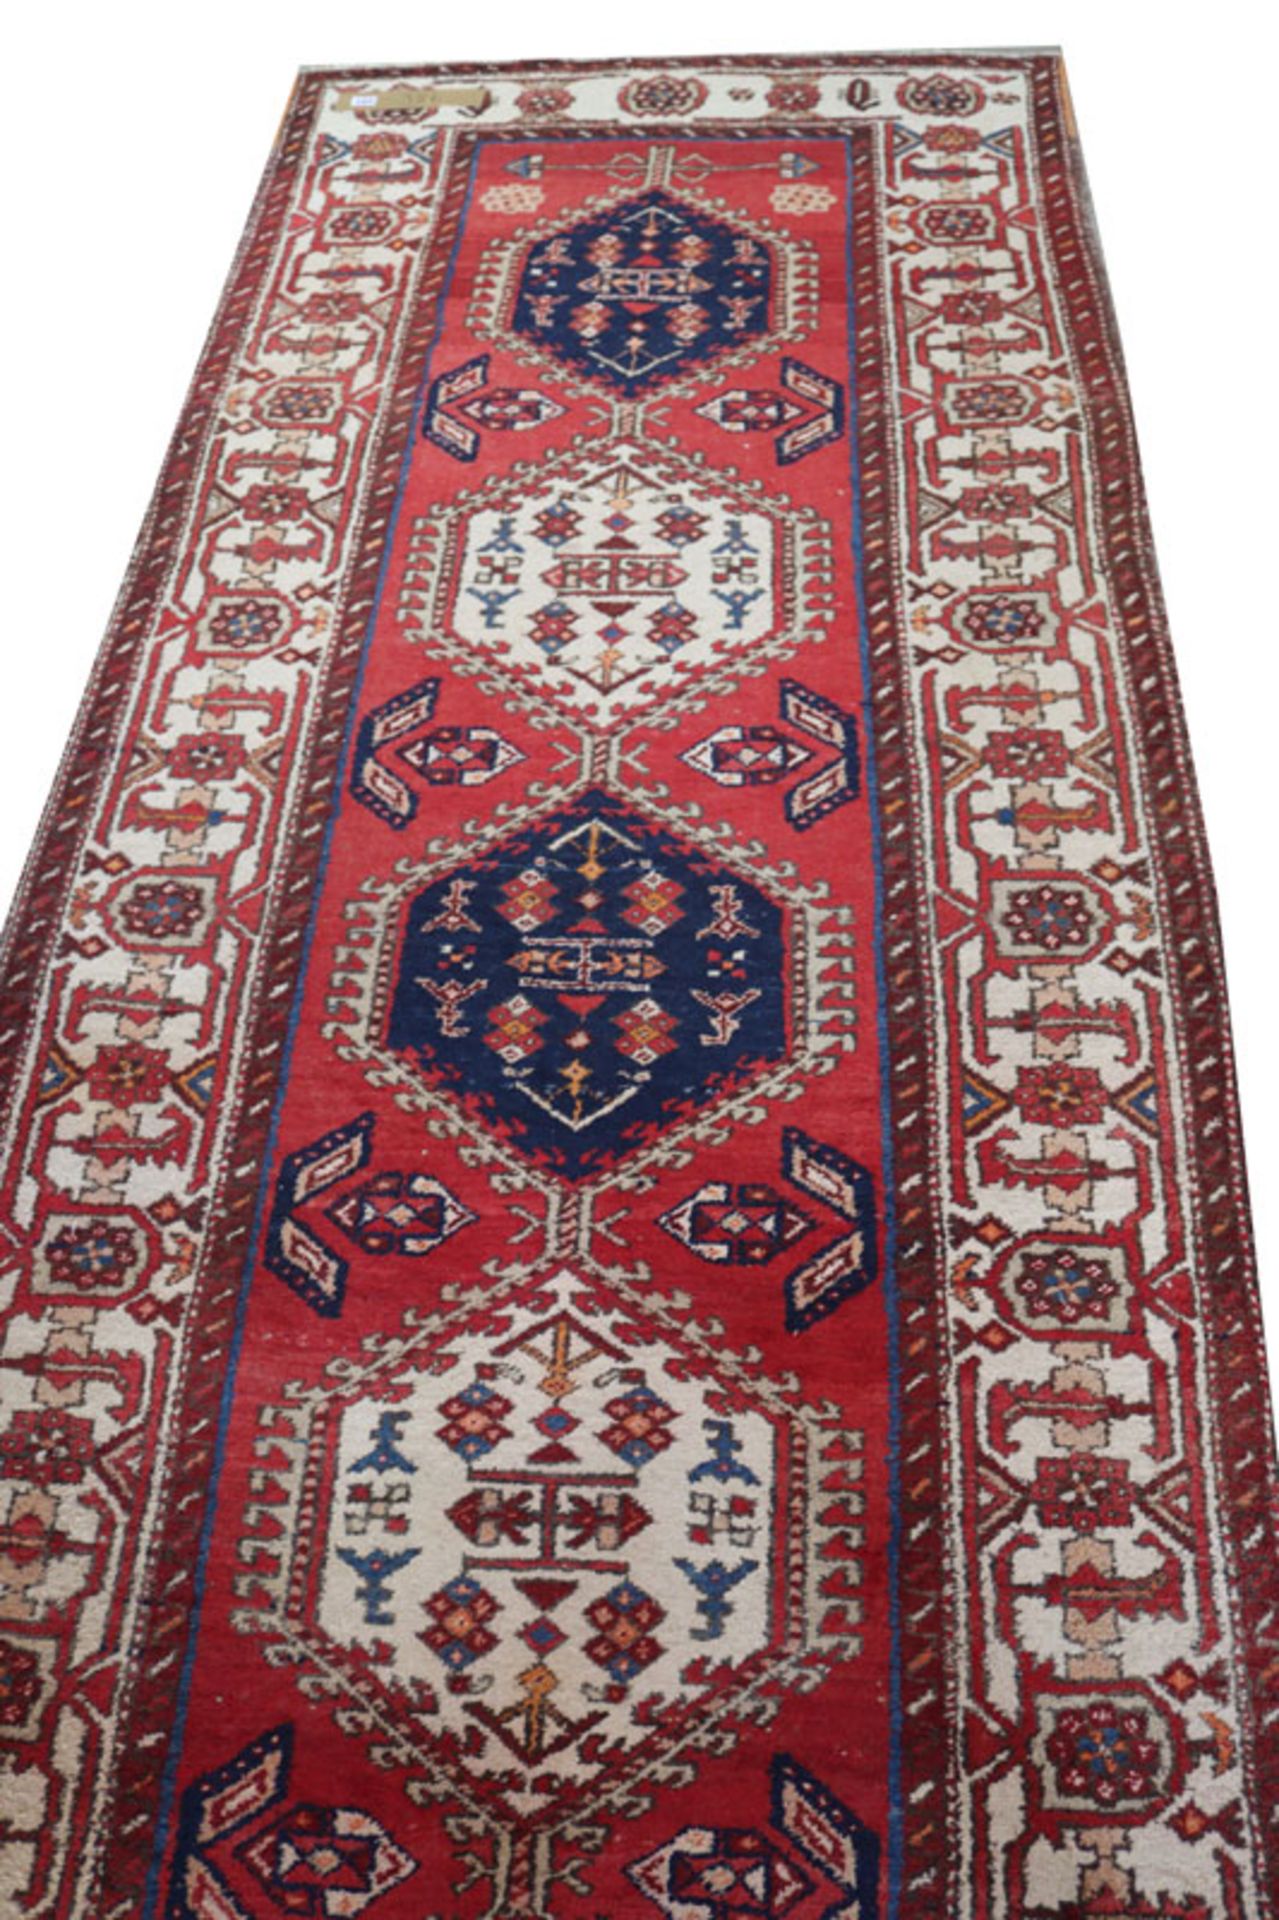 Teppich, Mahal, rot/blau/beige, Gebrauchsspuren, teils fleckig, 322 cm x 121 cm